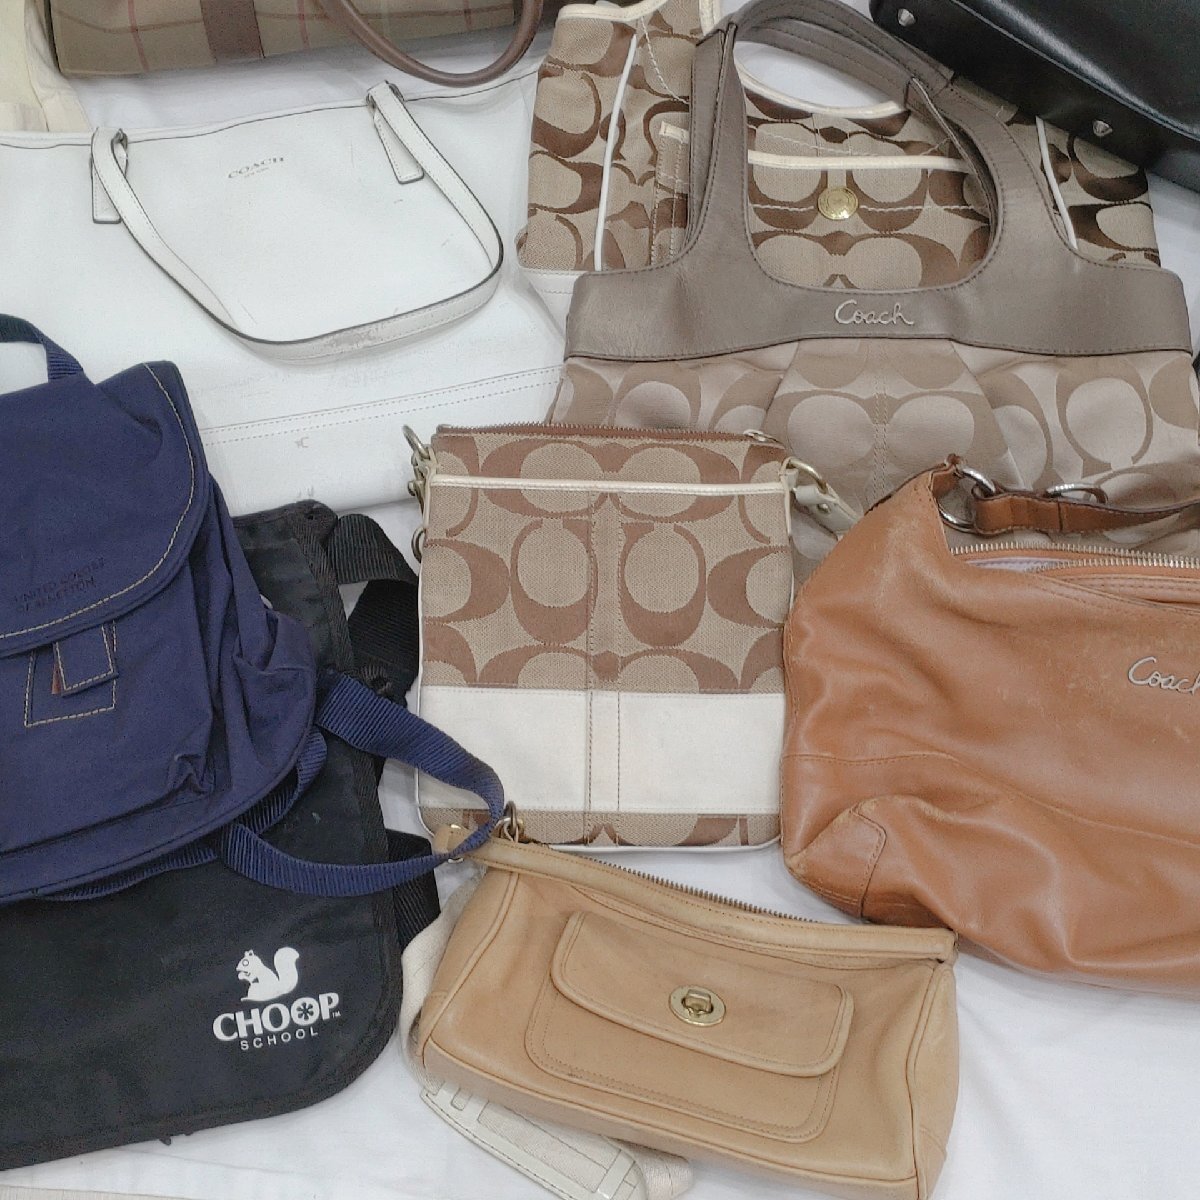 (B) сумка много продажа комплектом COACH/FURLA/ Folli Follie др. ручная сумочка сумка на плечо большая сумка кожа ткань детский рюкзак 